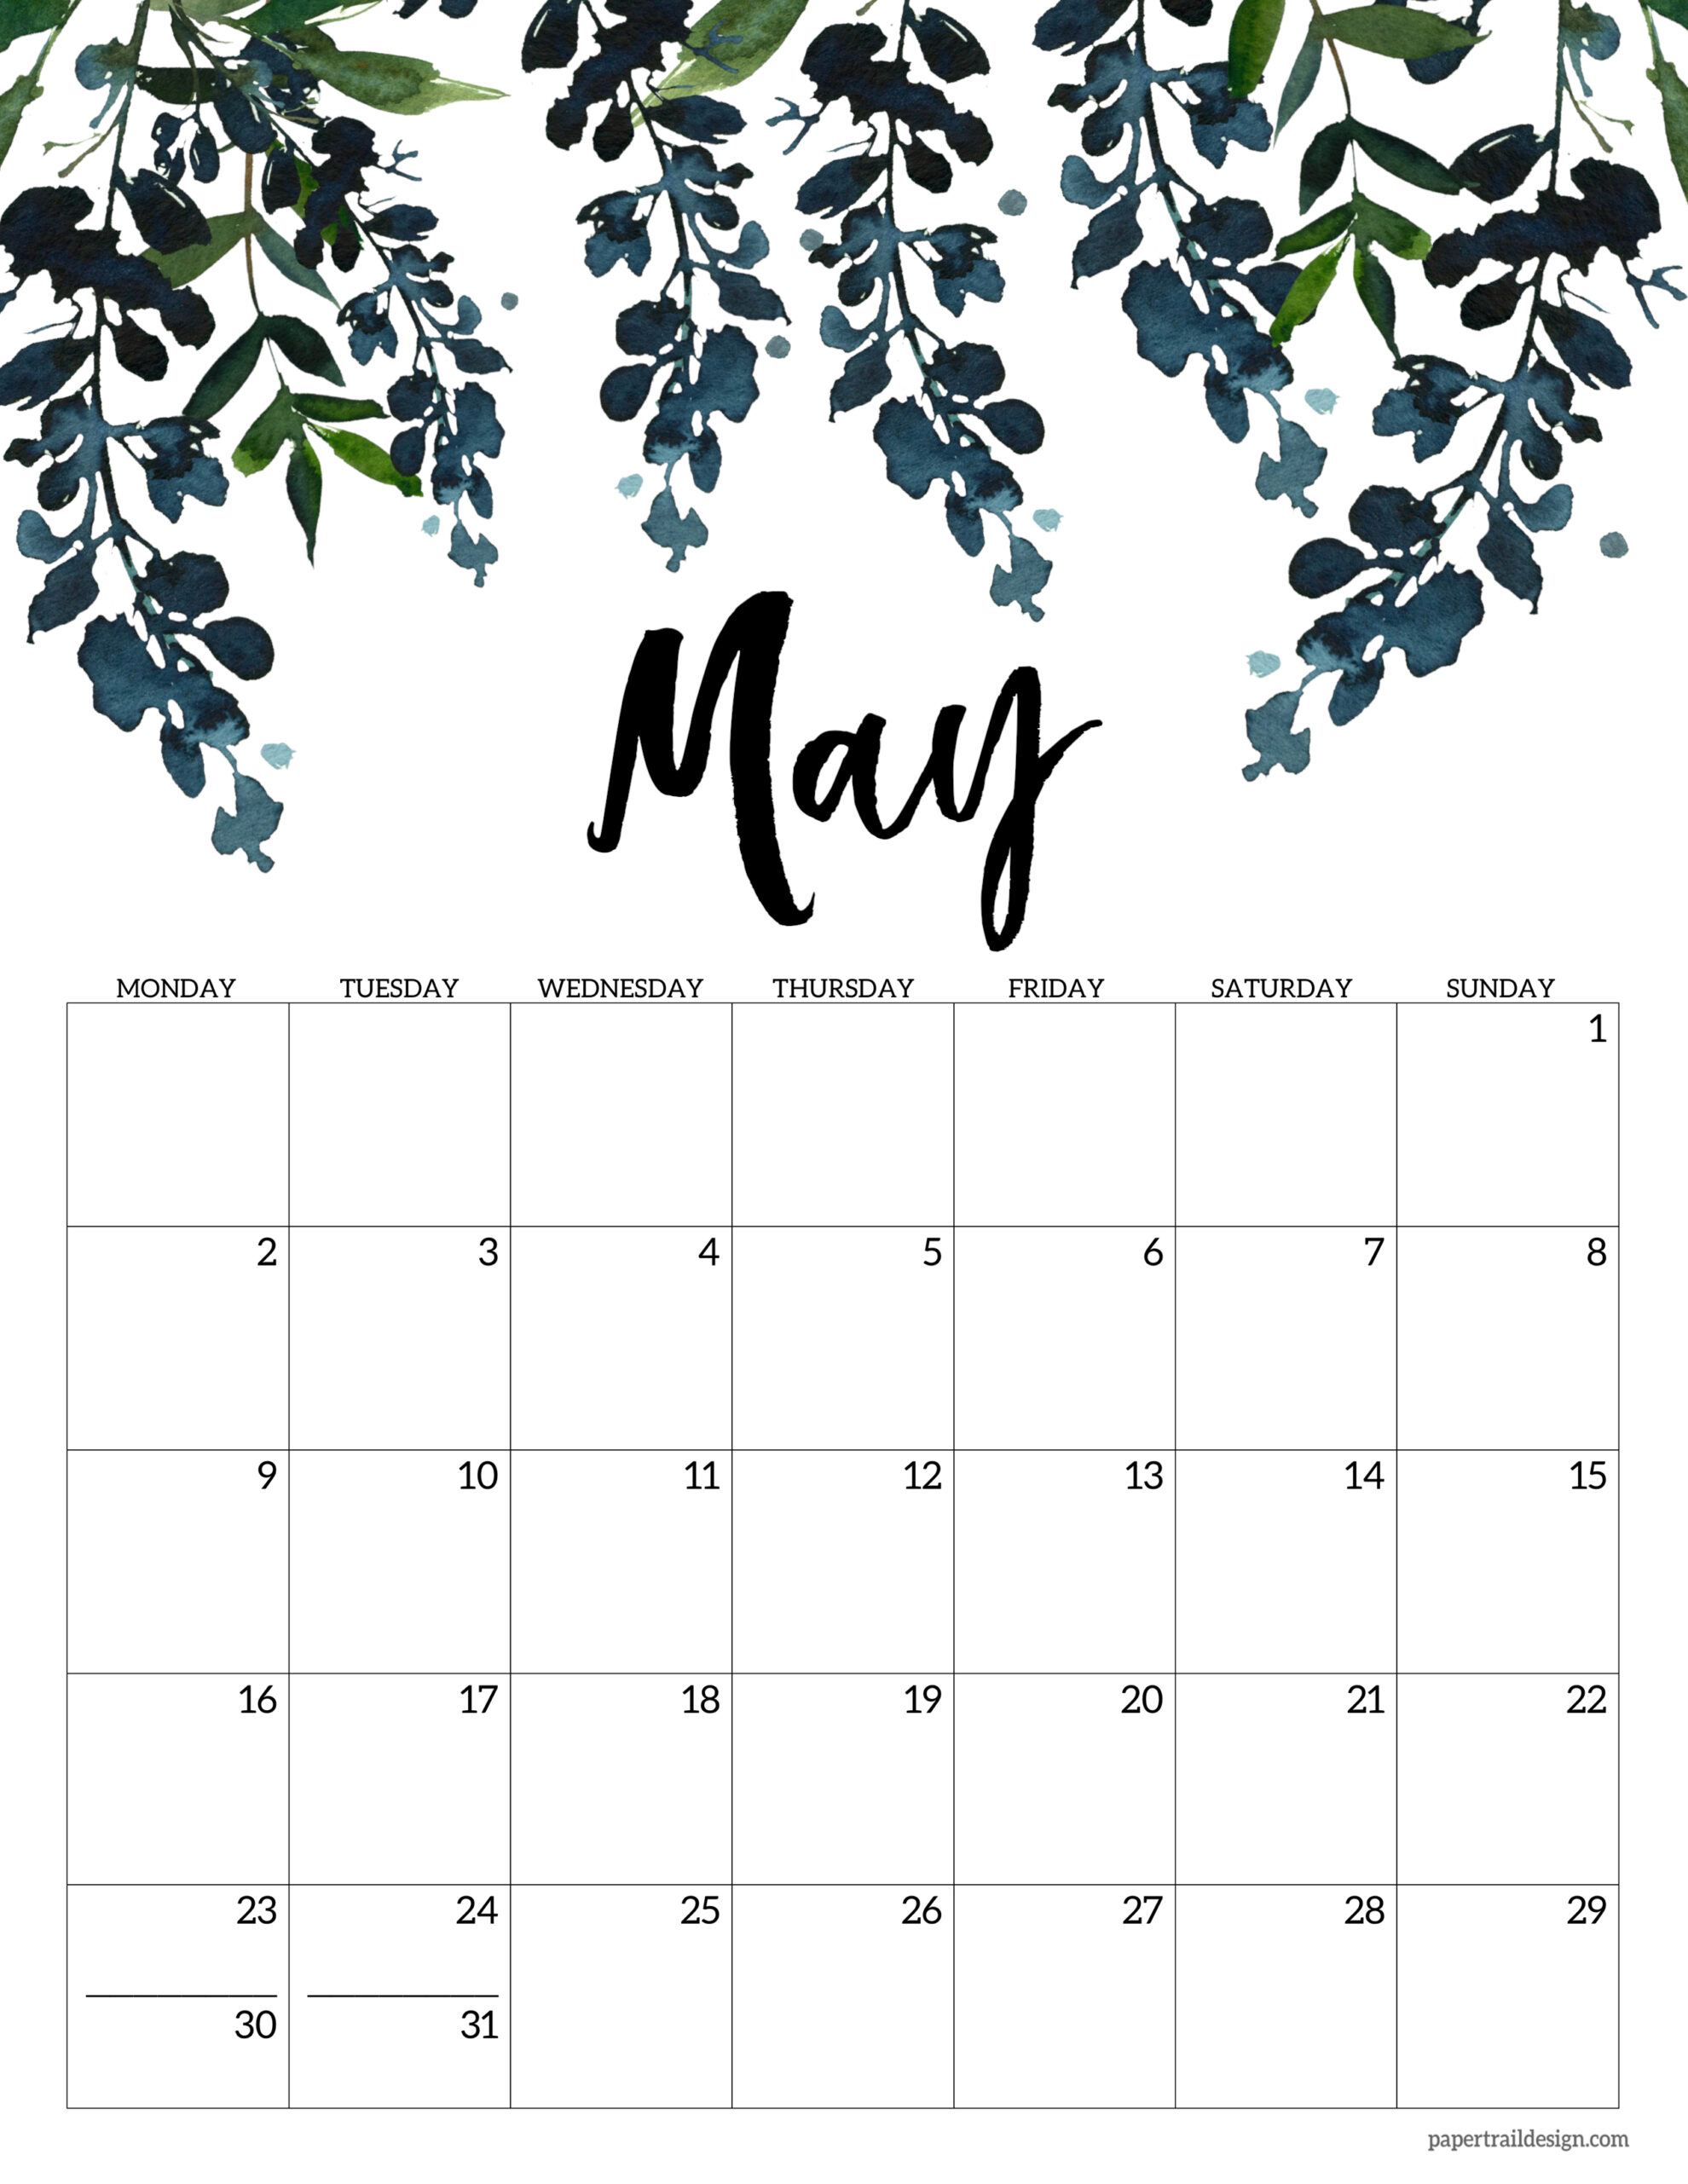 may-2022-free-printable-calendar-printable-world-holiday